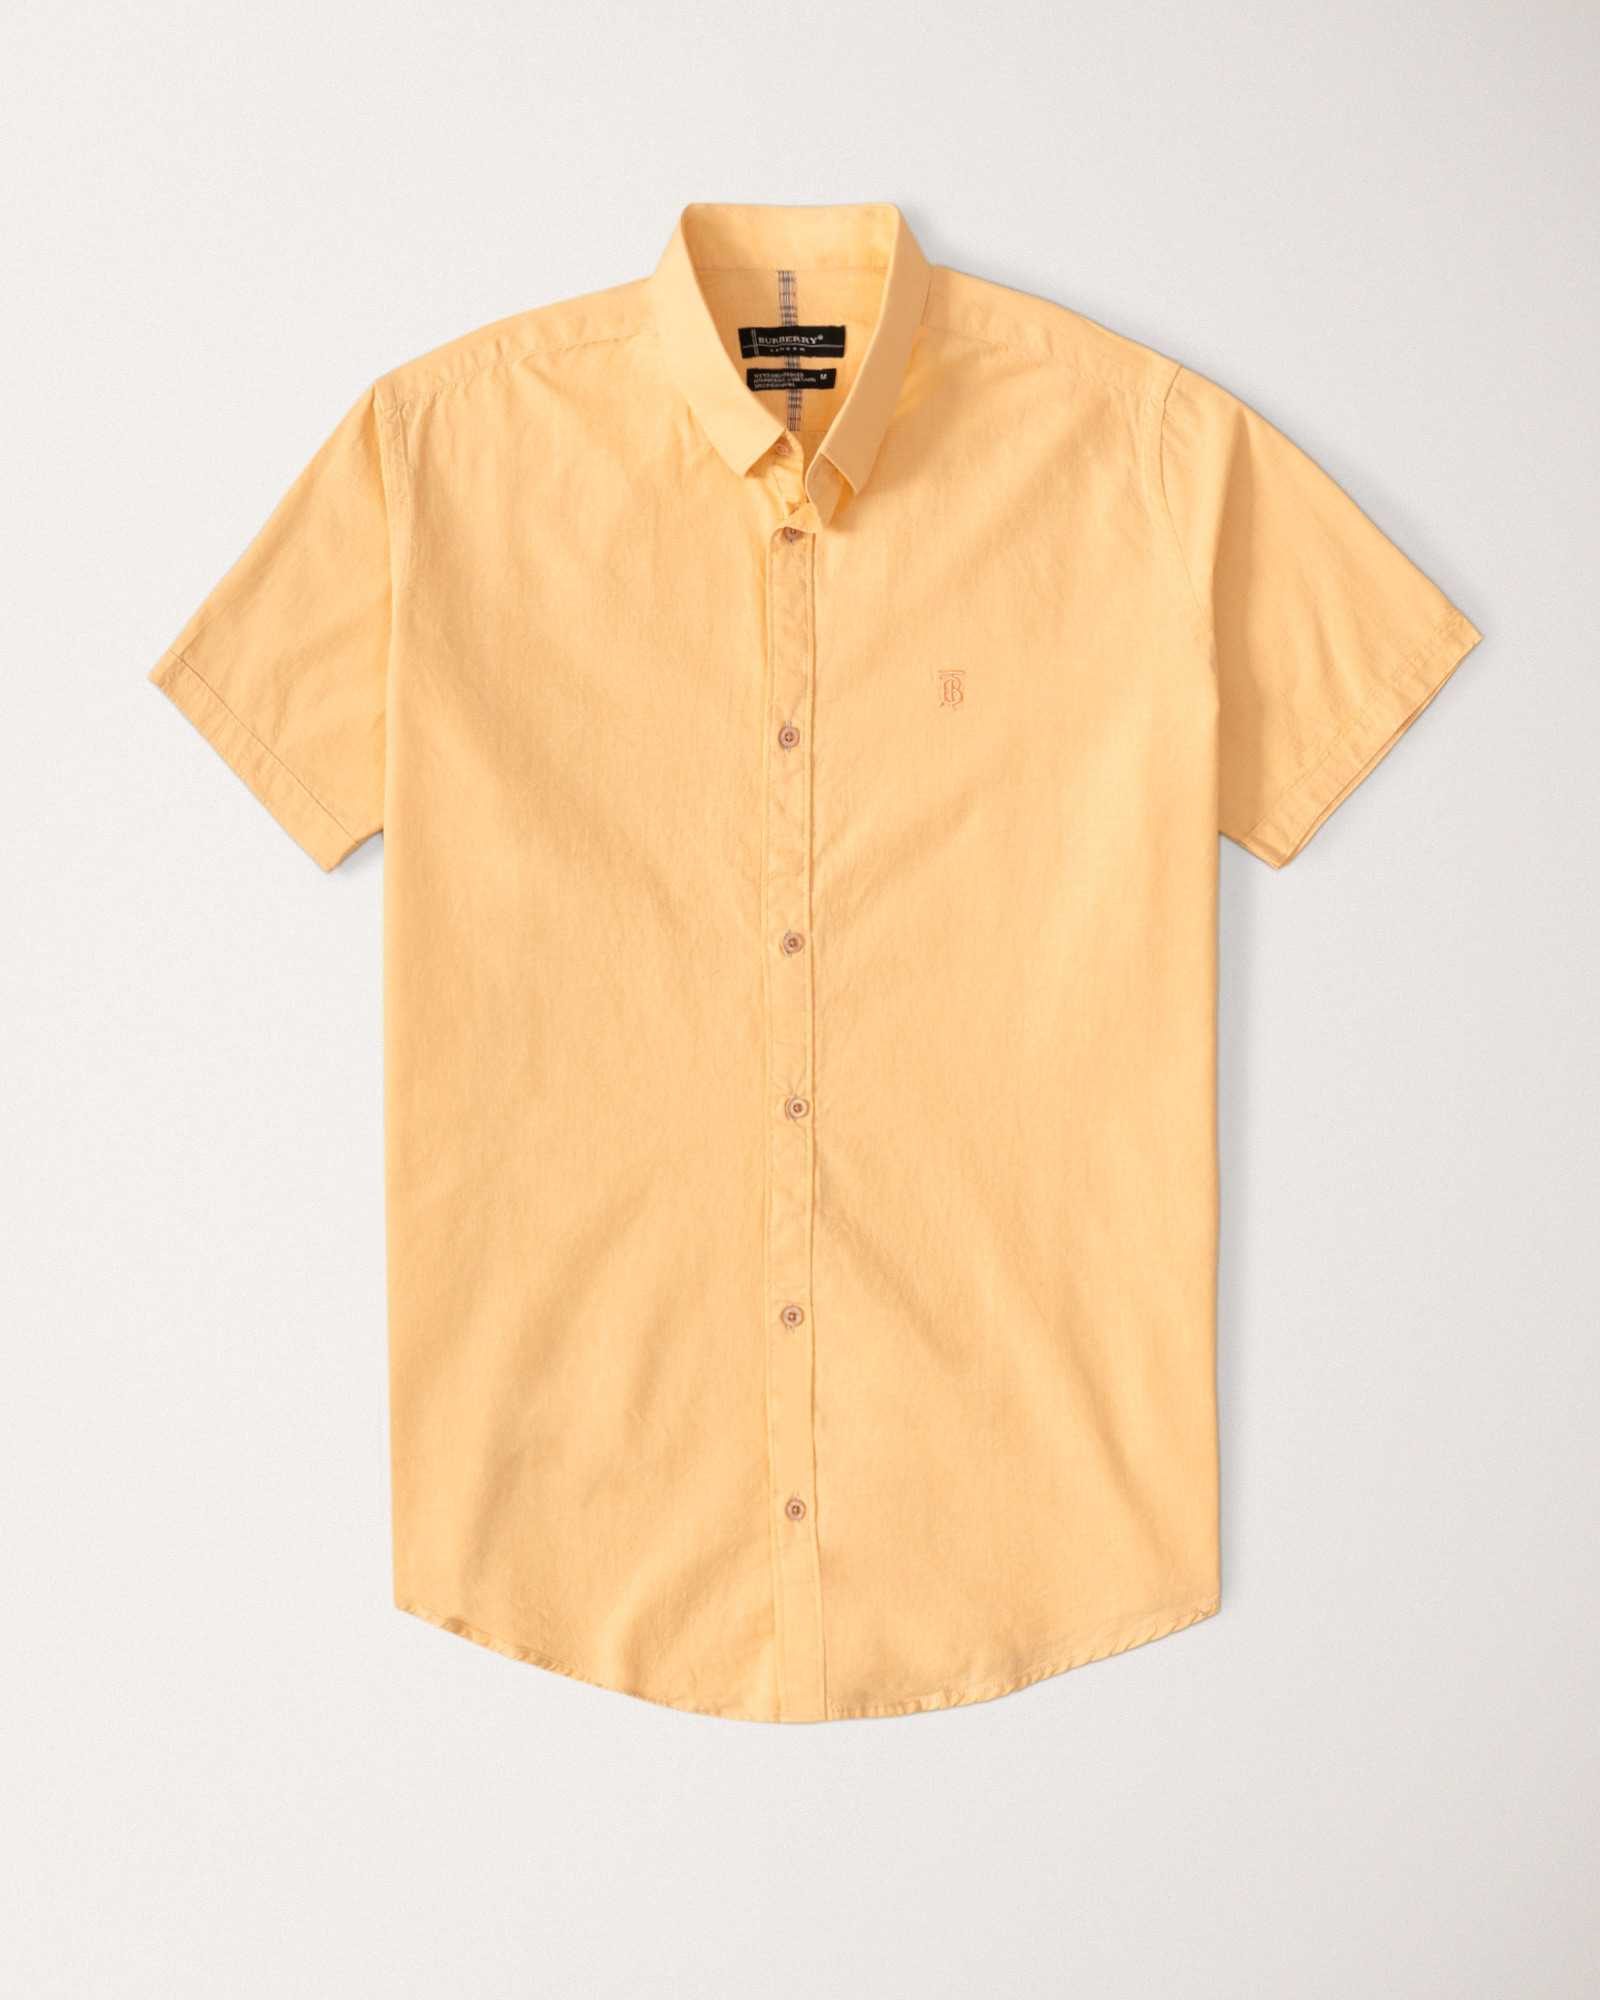 پیراهن مردانه آستین بلند نارنجی 21122235